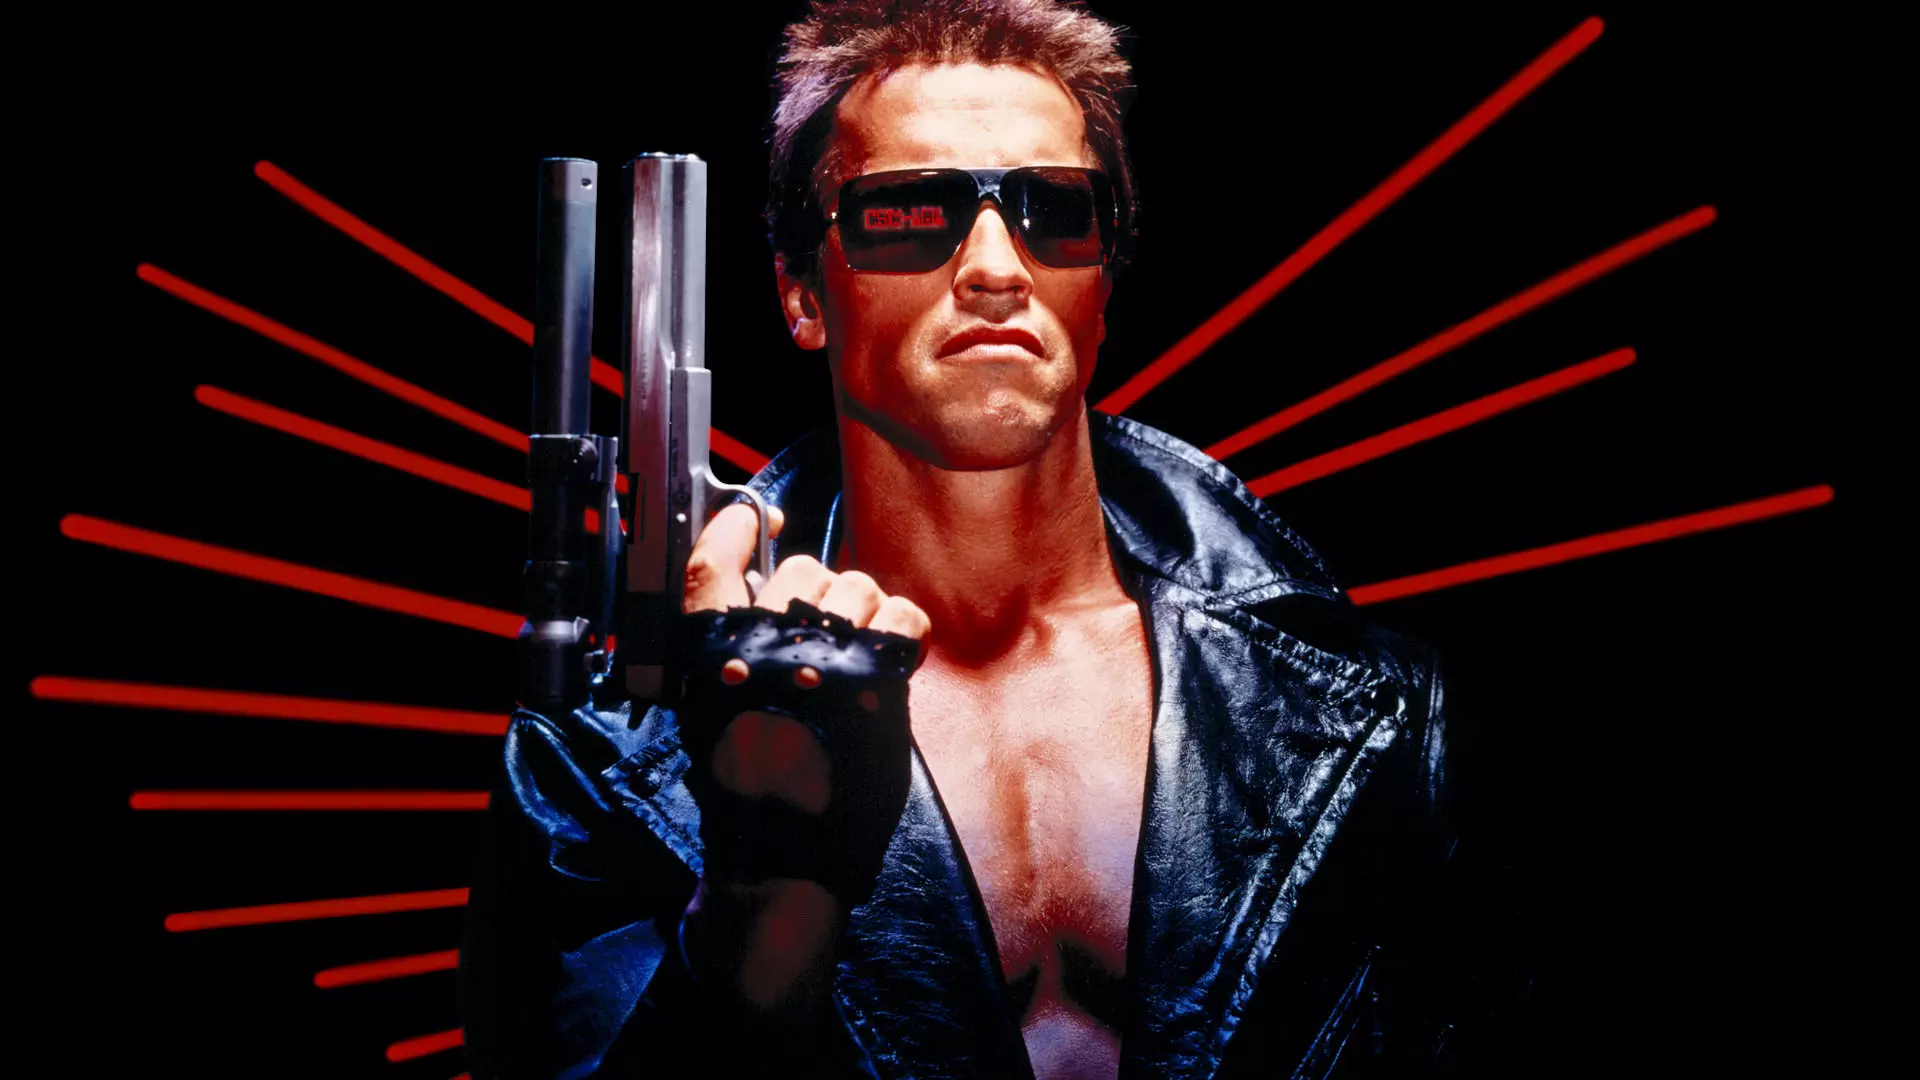  آرنولد شوارزنگر در نقش ترمیناتور در فیلم Terminator